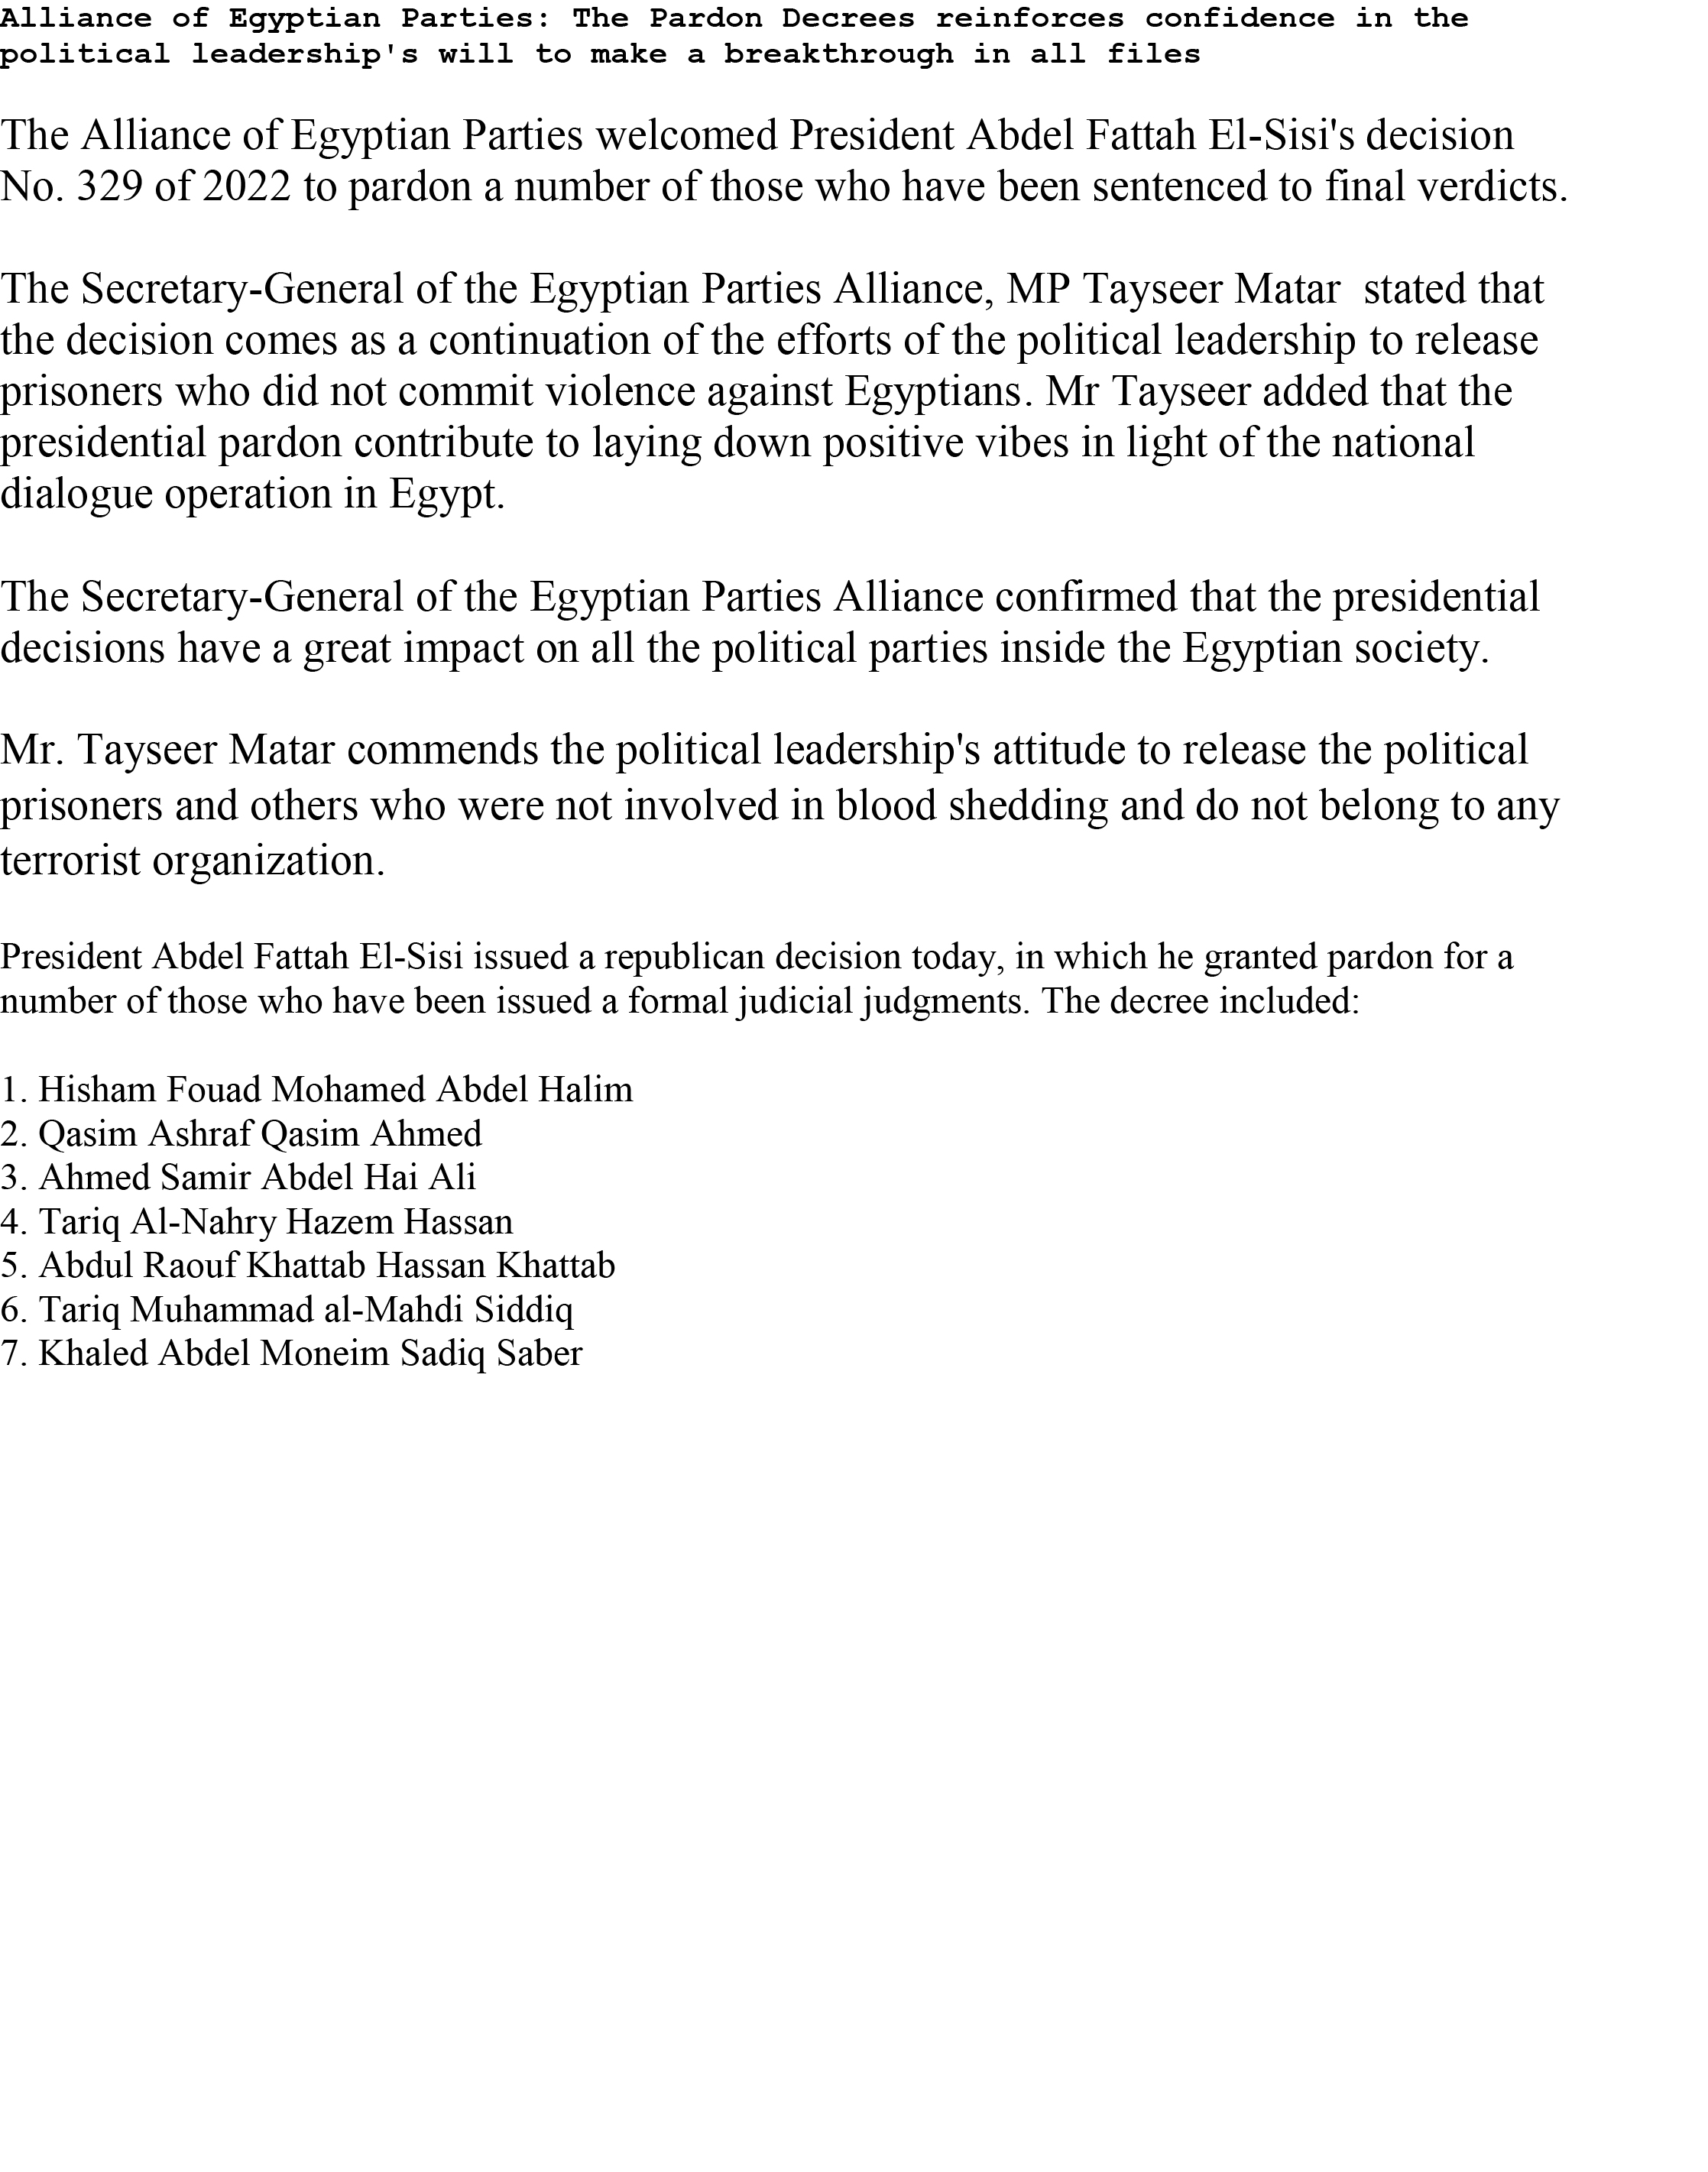 تحالف الأحزاب المصرية يصدر بيانا باللغة الإنجليزية يرحب فيه بقرارات العفو الرئاسي